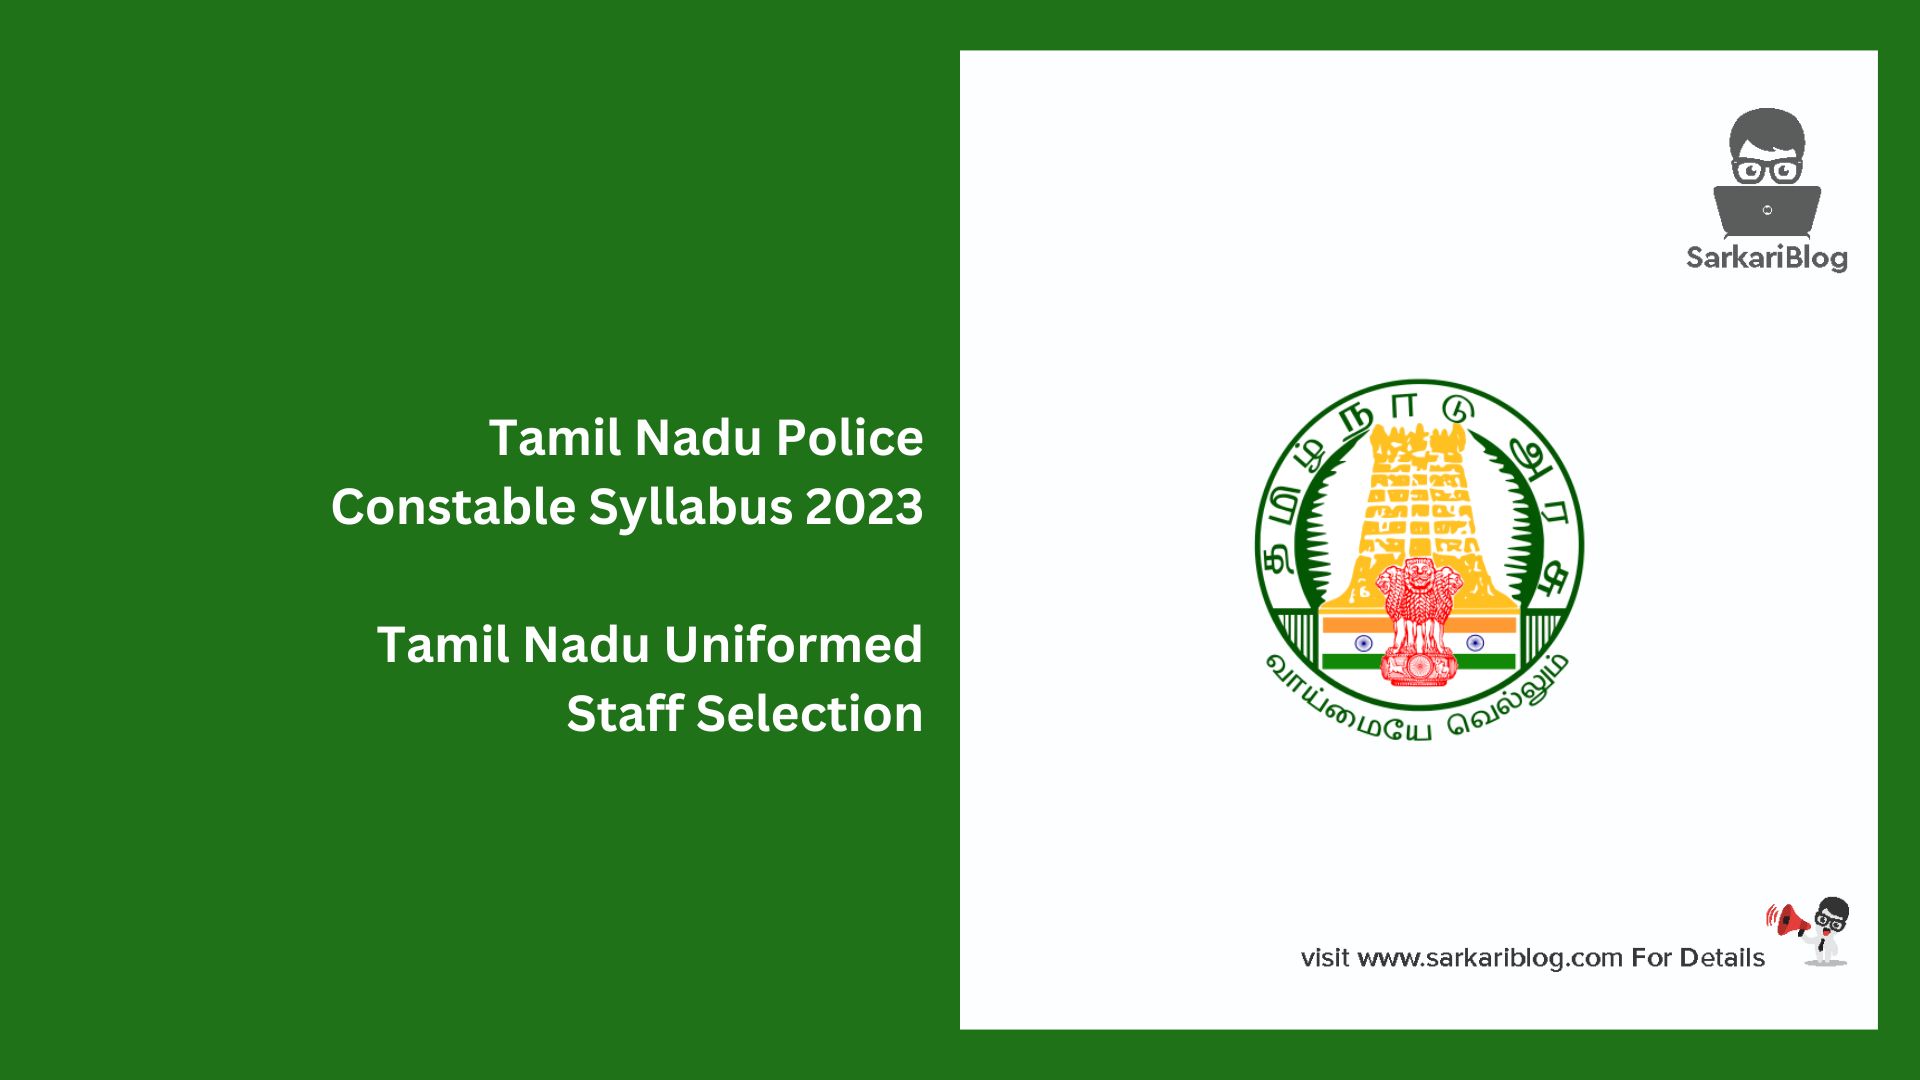 Tamil Nadu Police Constable Syllabus 2023